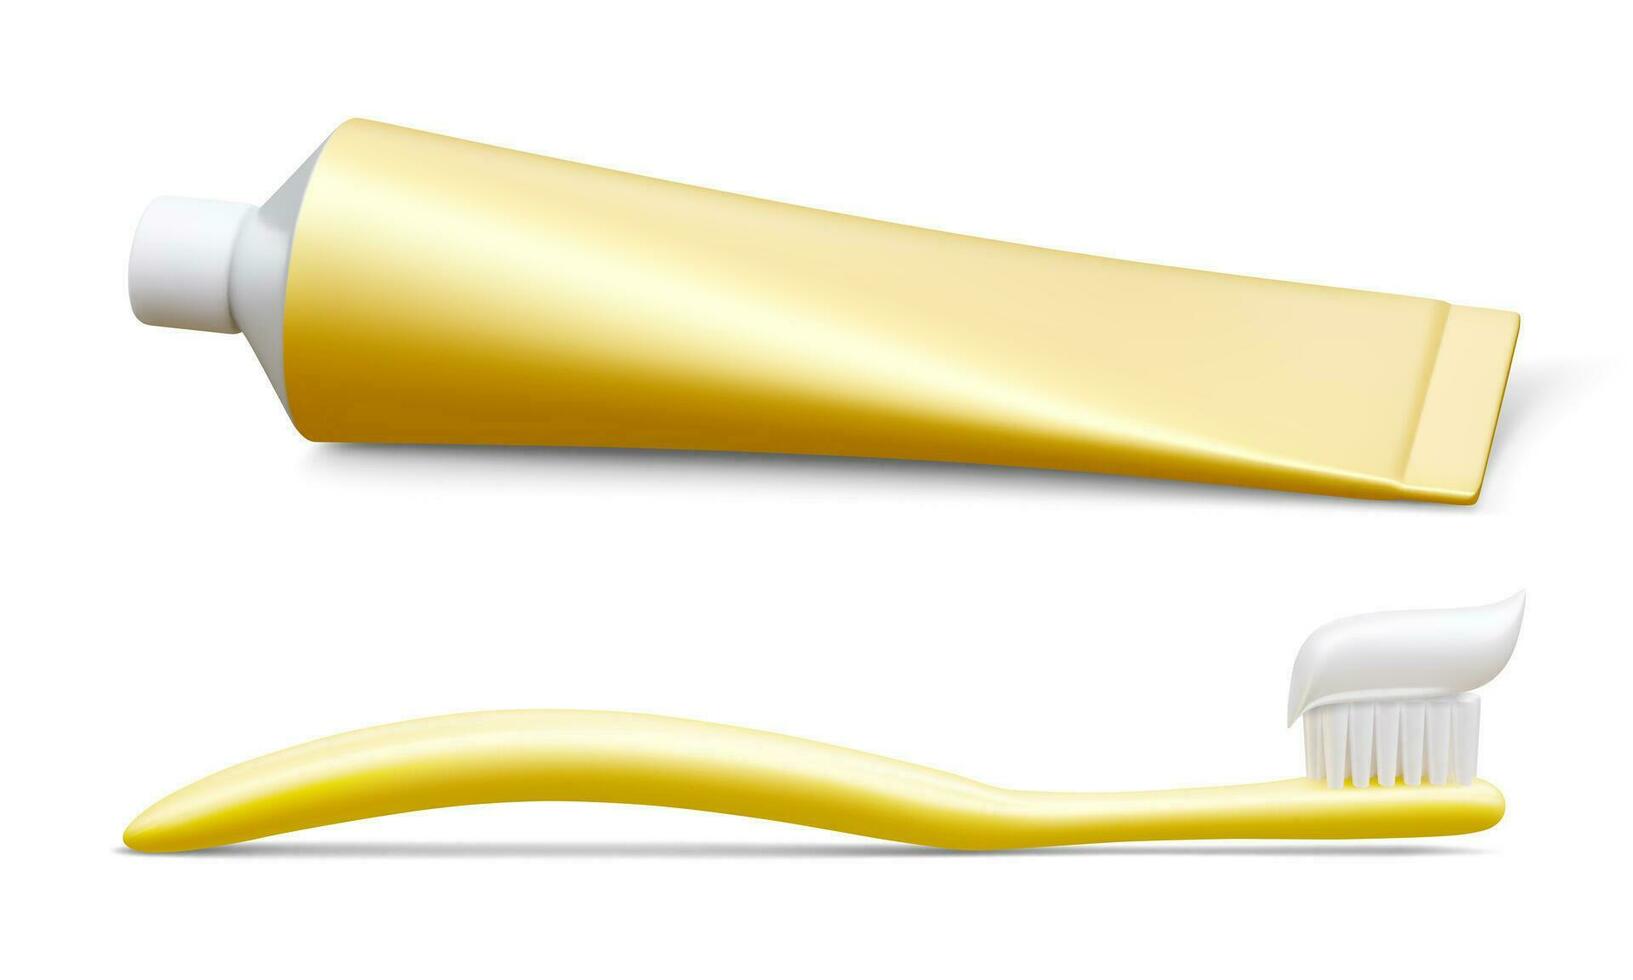 realista tubo Bosquejo pasta dental y cepillo de dientes. modelo para medicina o productos cosméticos. vector ilustración